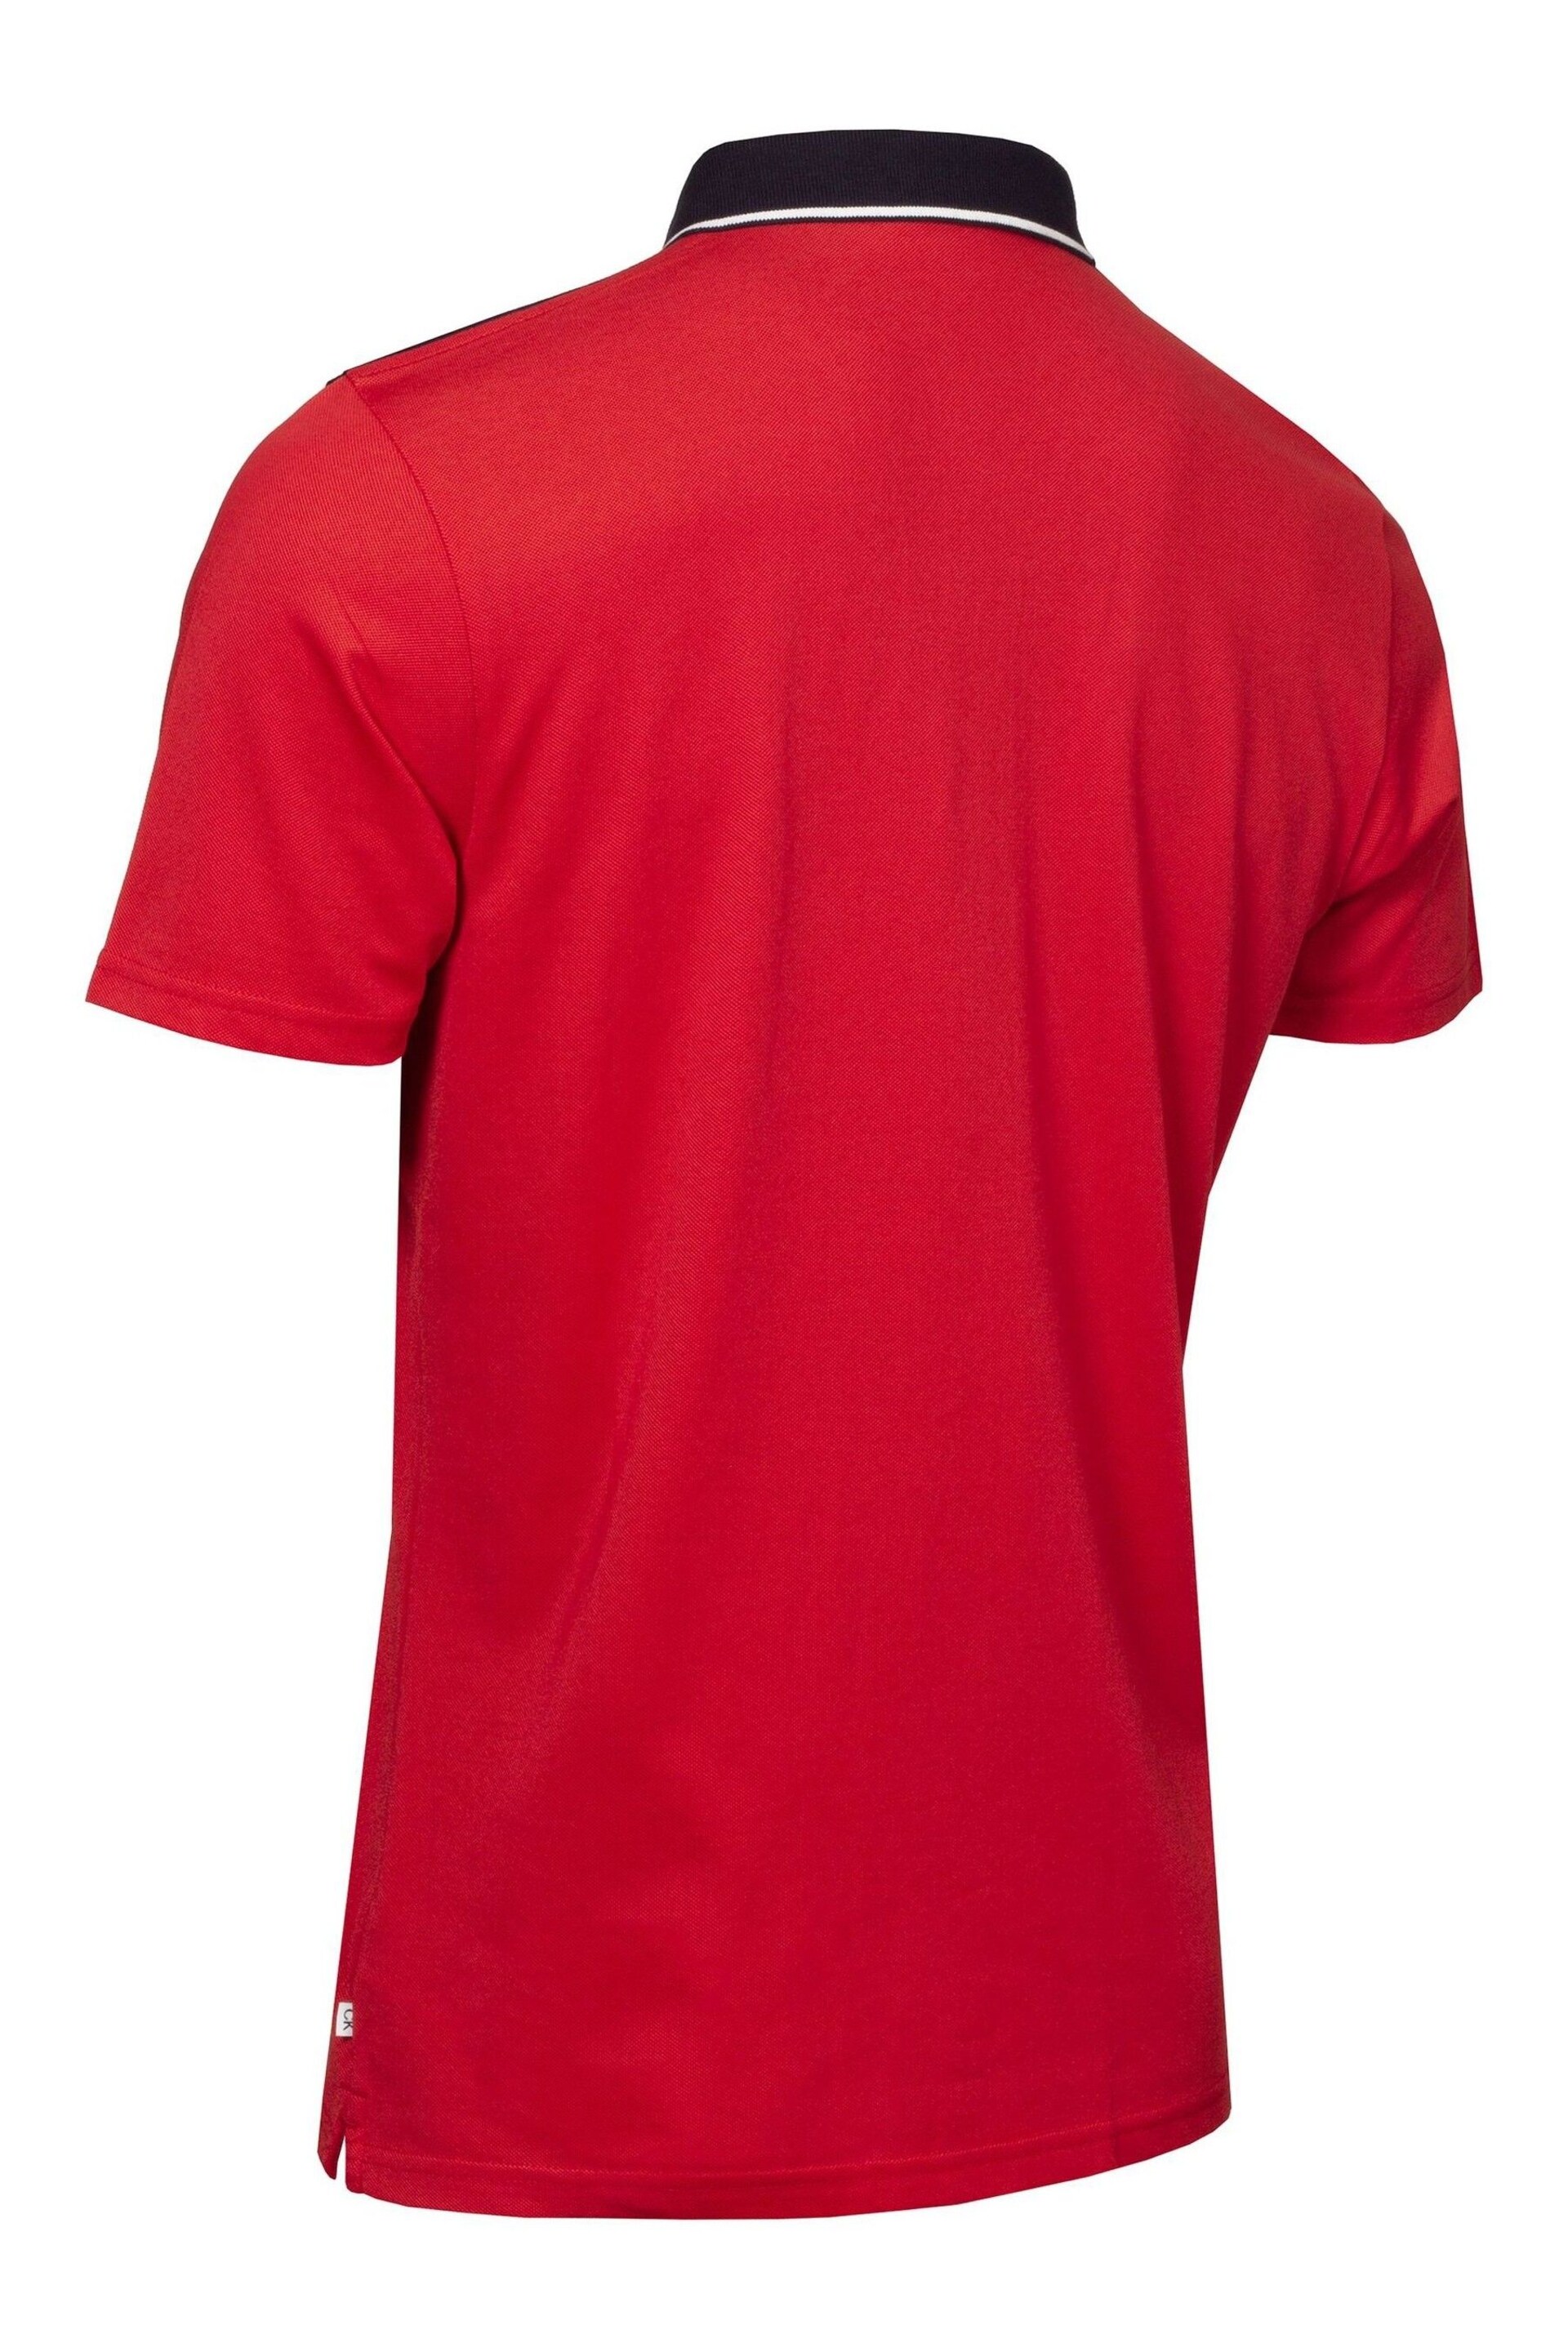 Calvin Klein Golf Red Eagle Polo Shirt - Image 6 of 8